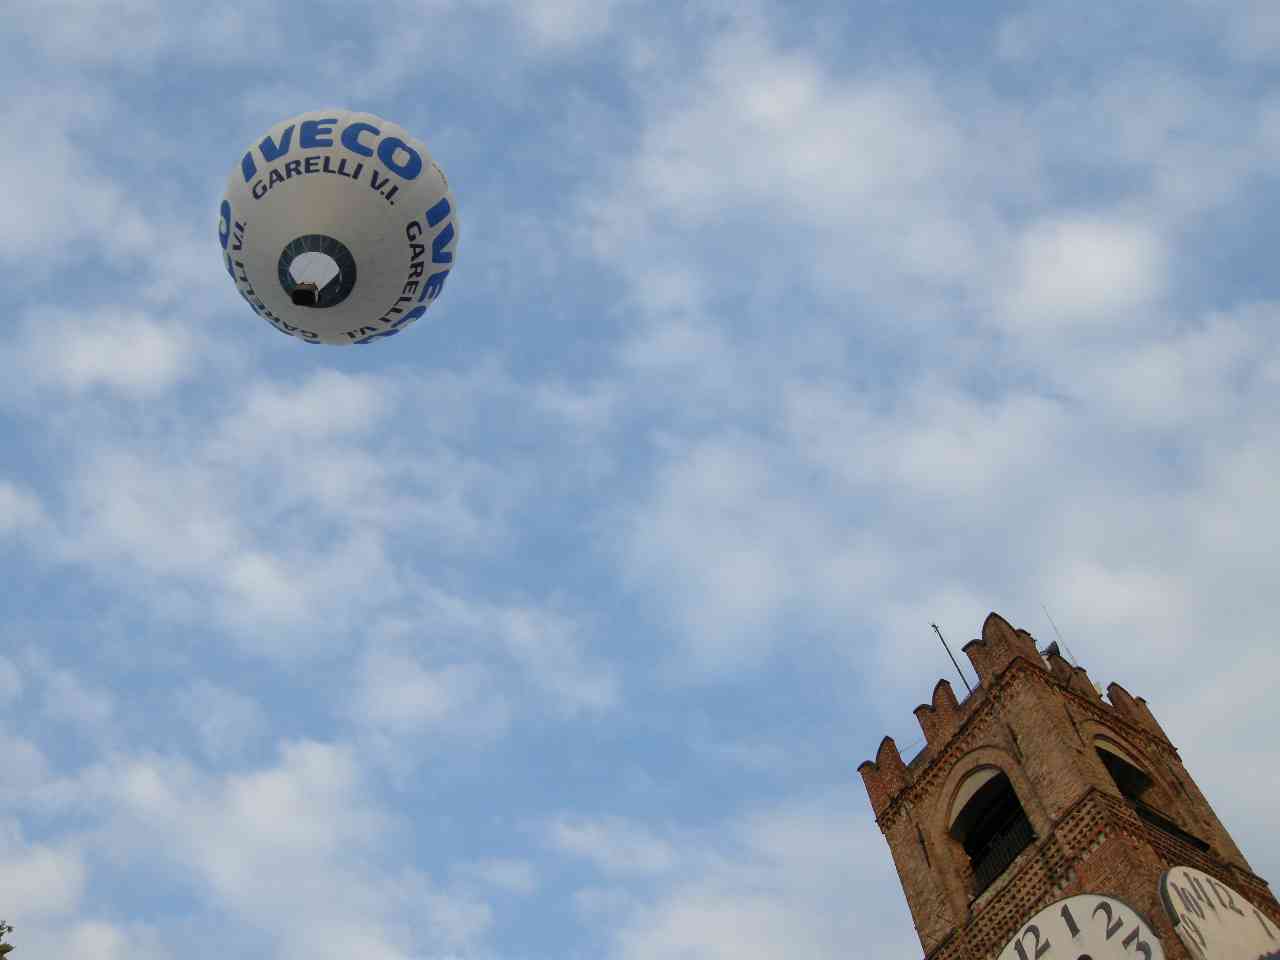 Giuseppe Forgione in volo sul target 'virtuale' durante il Fly In di venerd pomeriggio (Foto Roberto Spagnoli)